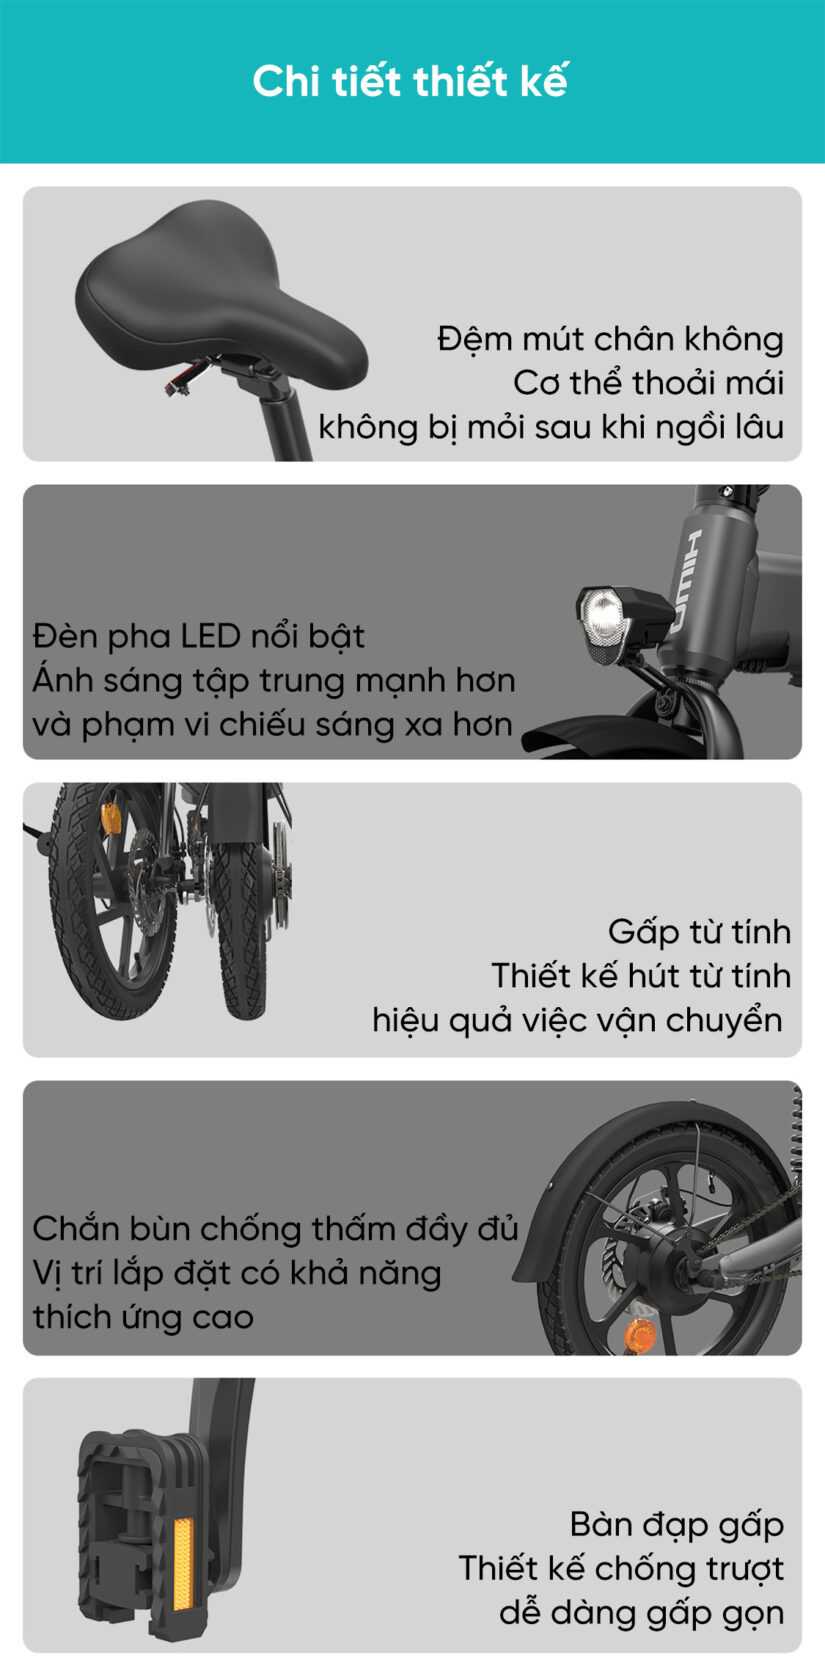 Yên xe trang bị đệm mút chân không. Đèn pha LED nổi bật. Gấp từ tính hiệu quả cho việc vận chuyển. Chắn bùn chống thấm đầy đủ. Bàn đạp gấp chống trượt